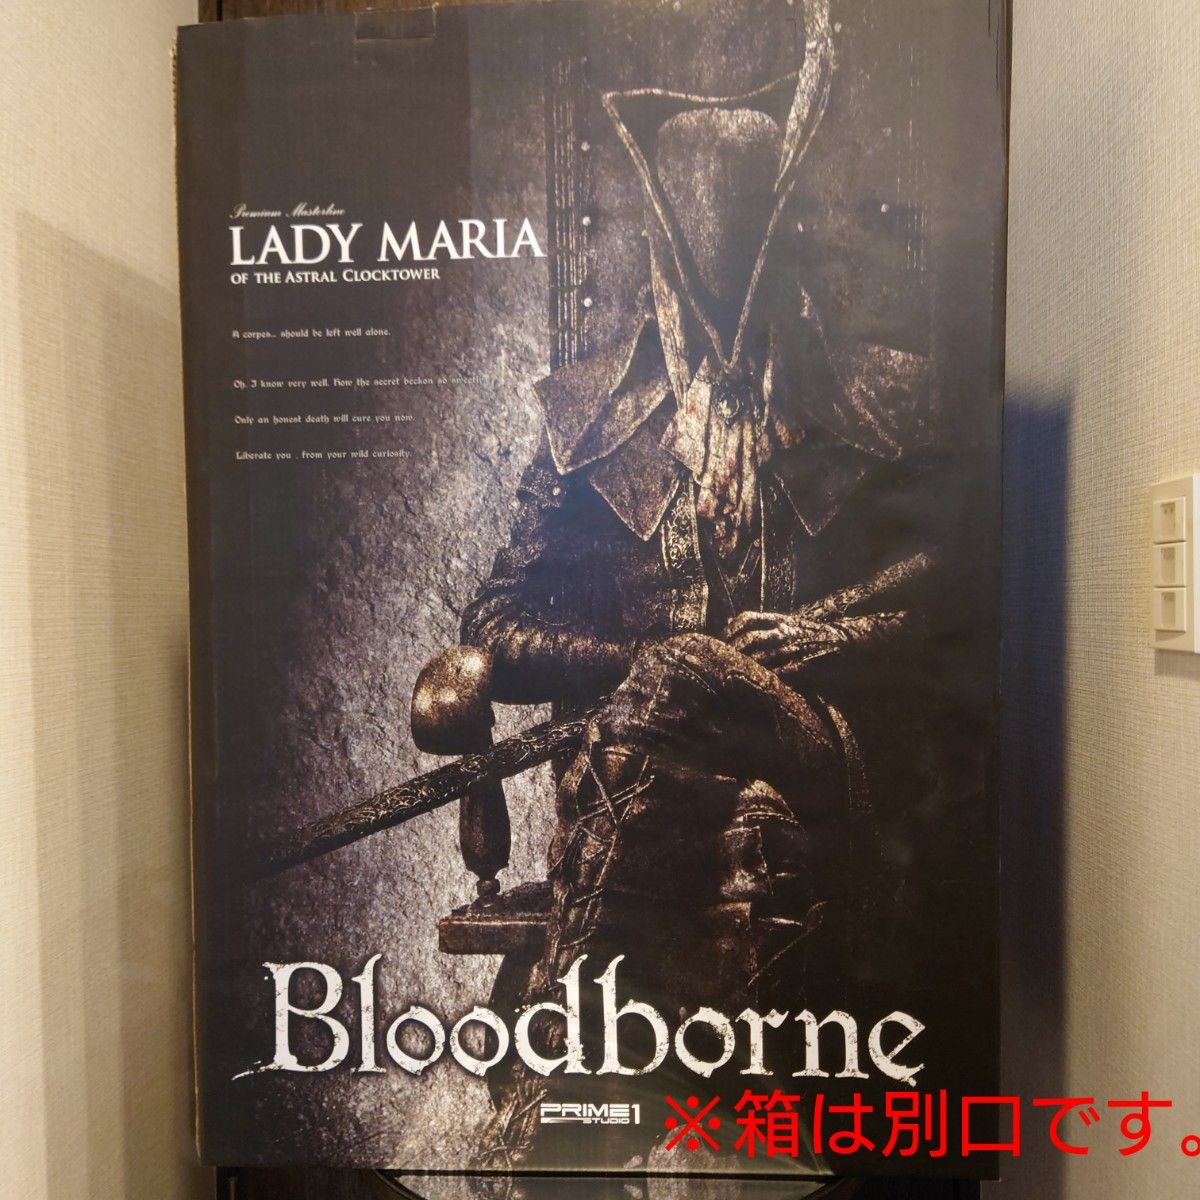 プライム1スタジオ Bloodborne 時計塔のマリア スタチュー フィギュア prime1studio ブラッドボーン